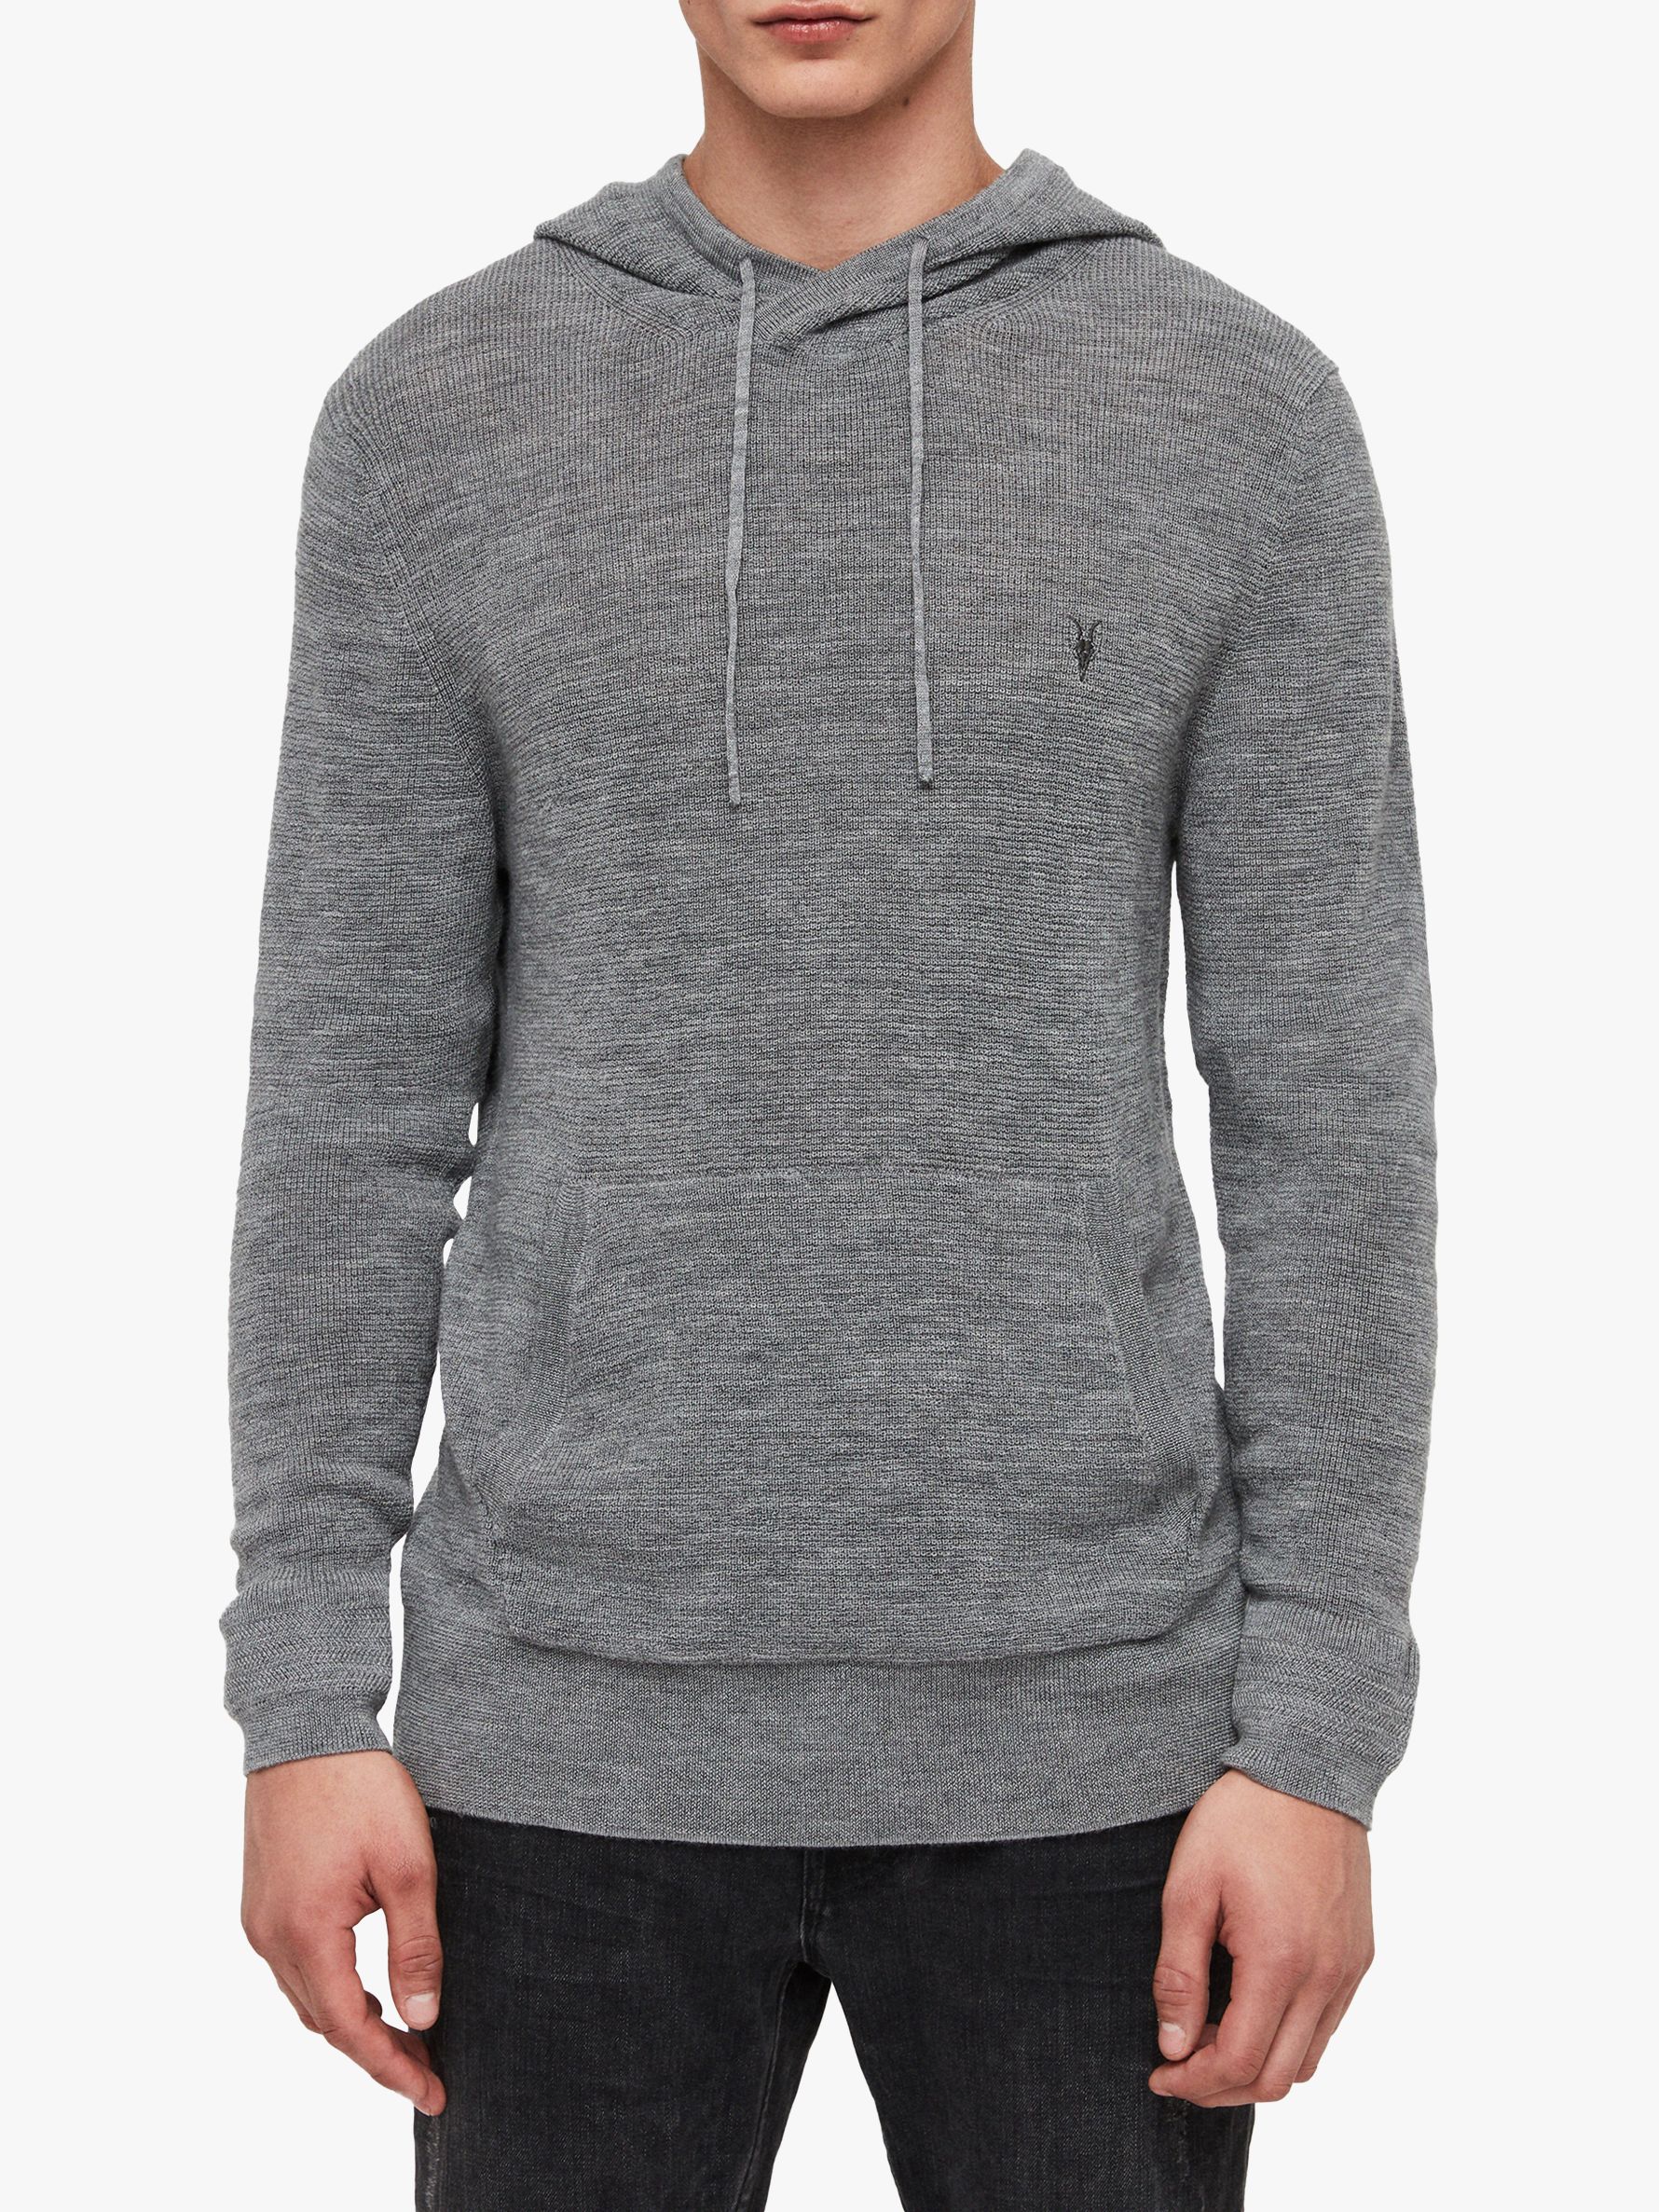 grey knit hoodie